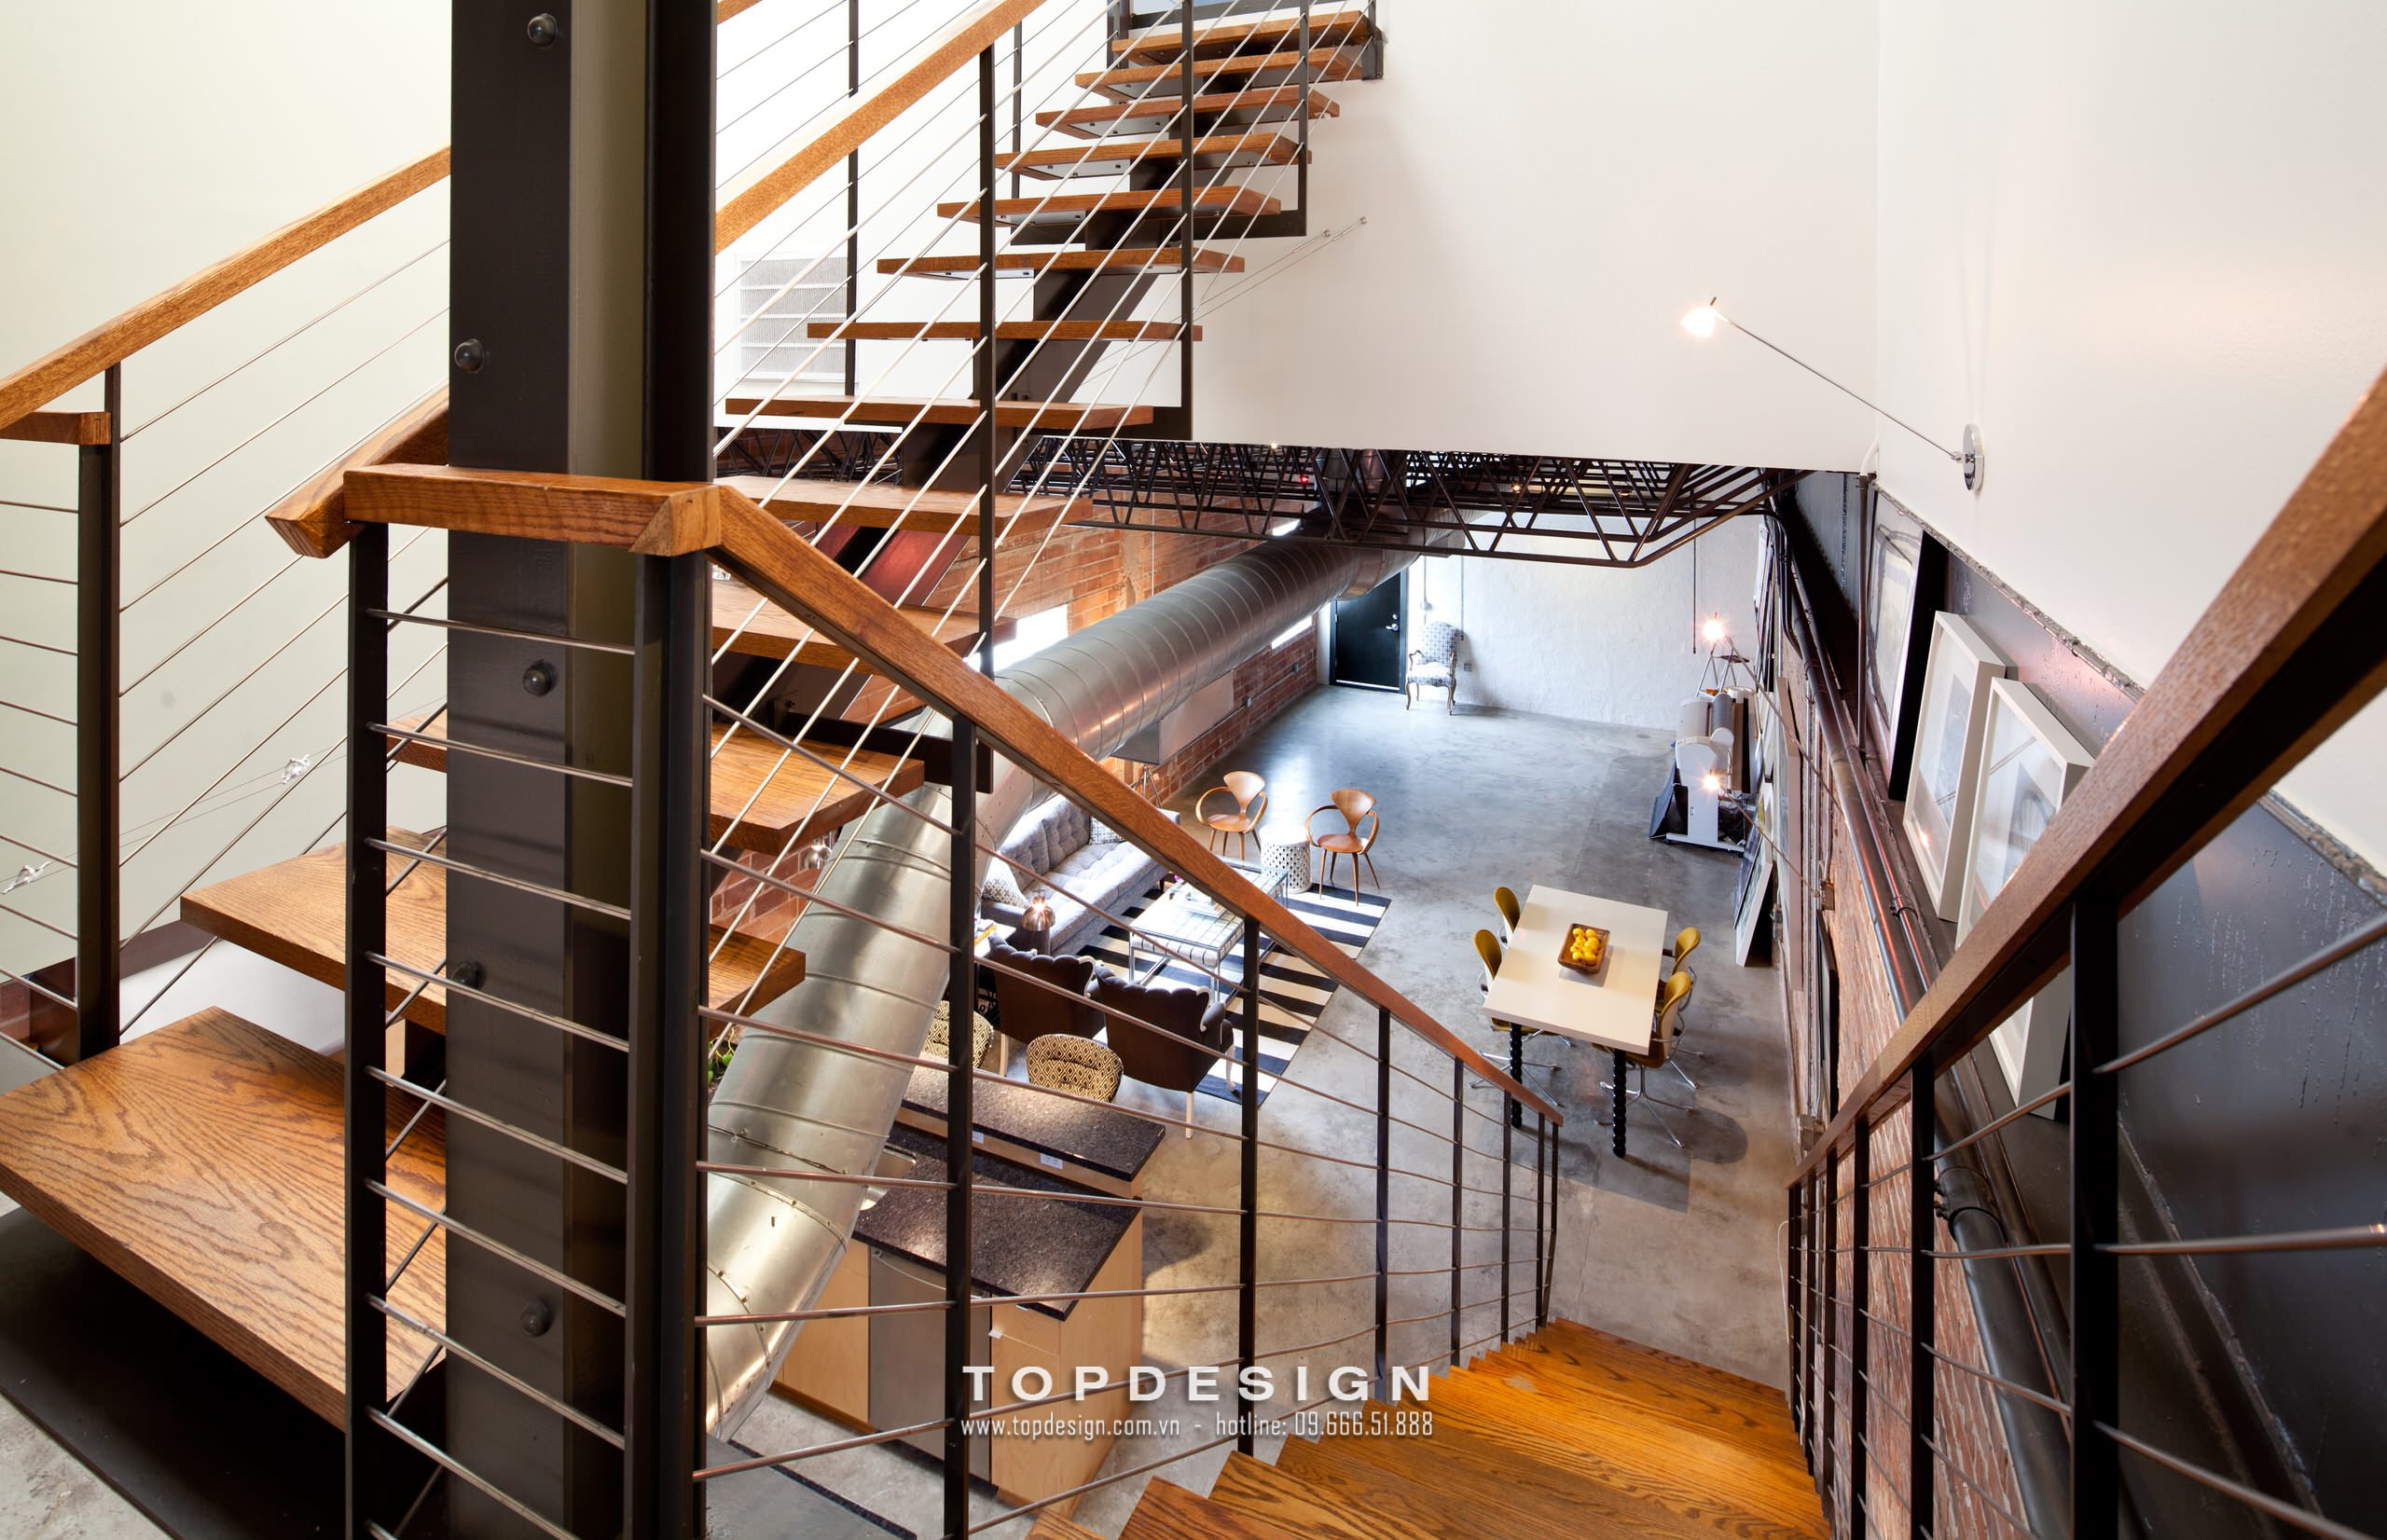 6.Thiết kế văn phòng phong cách công nghiệp bằng gỗ, chống trơn, hiện đại, tinh tế_TOPDESIGN